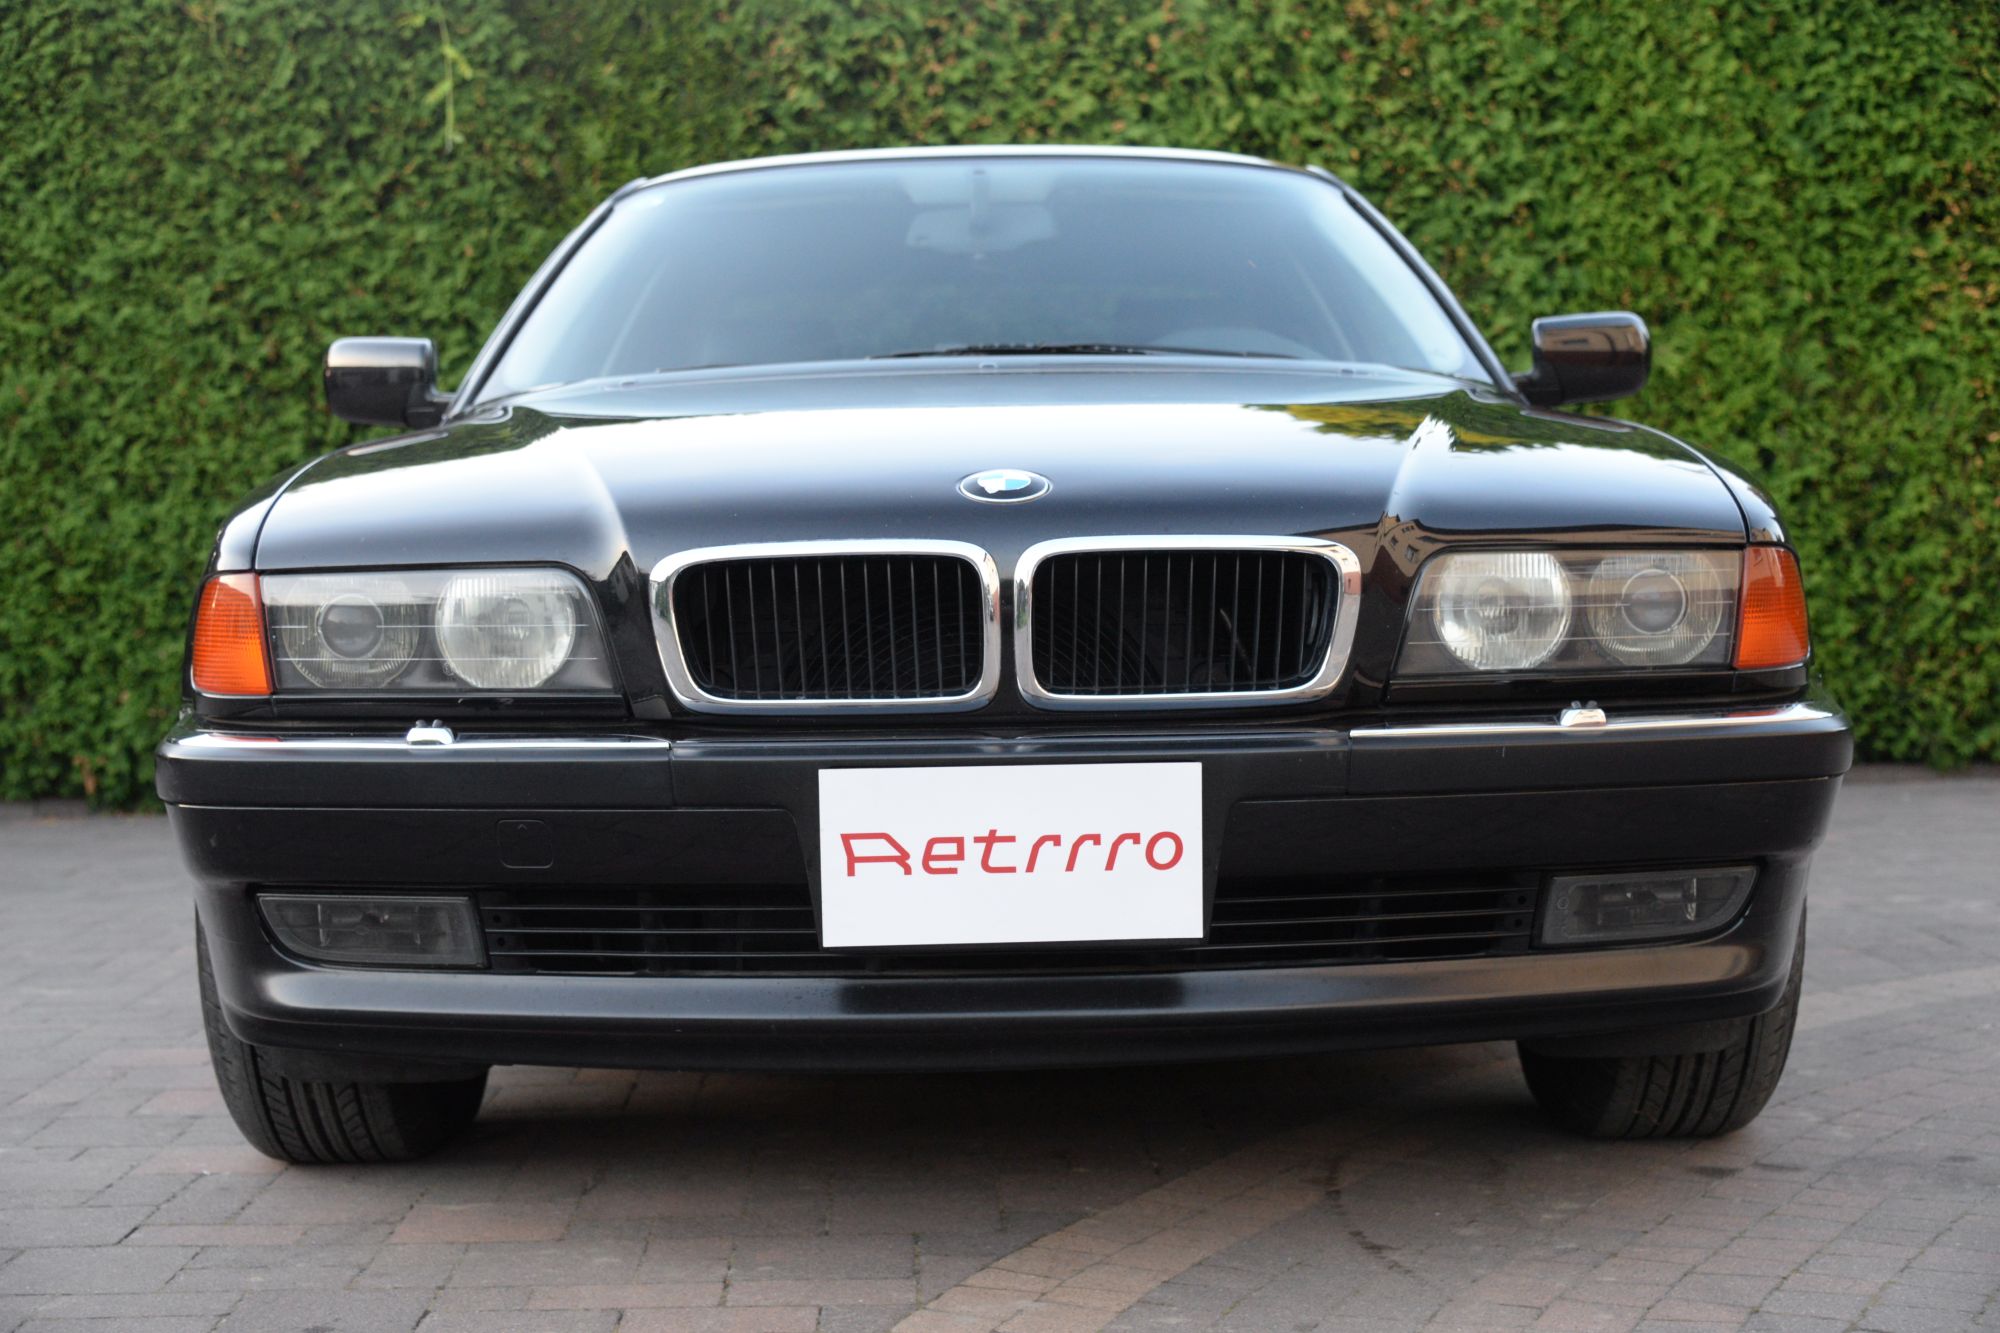 BMW E38 740i 1994r. — Retrrro Samochody klasyczne i